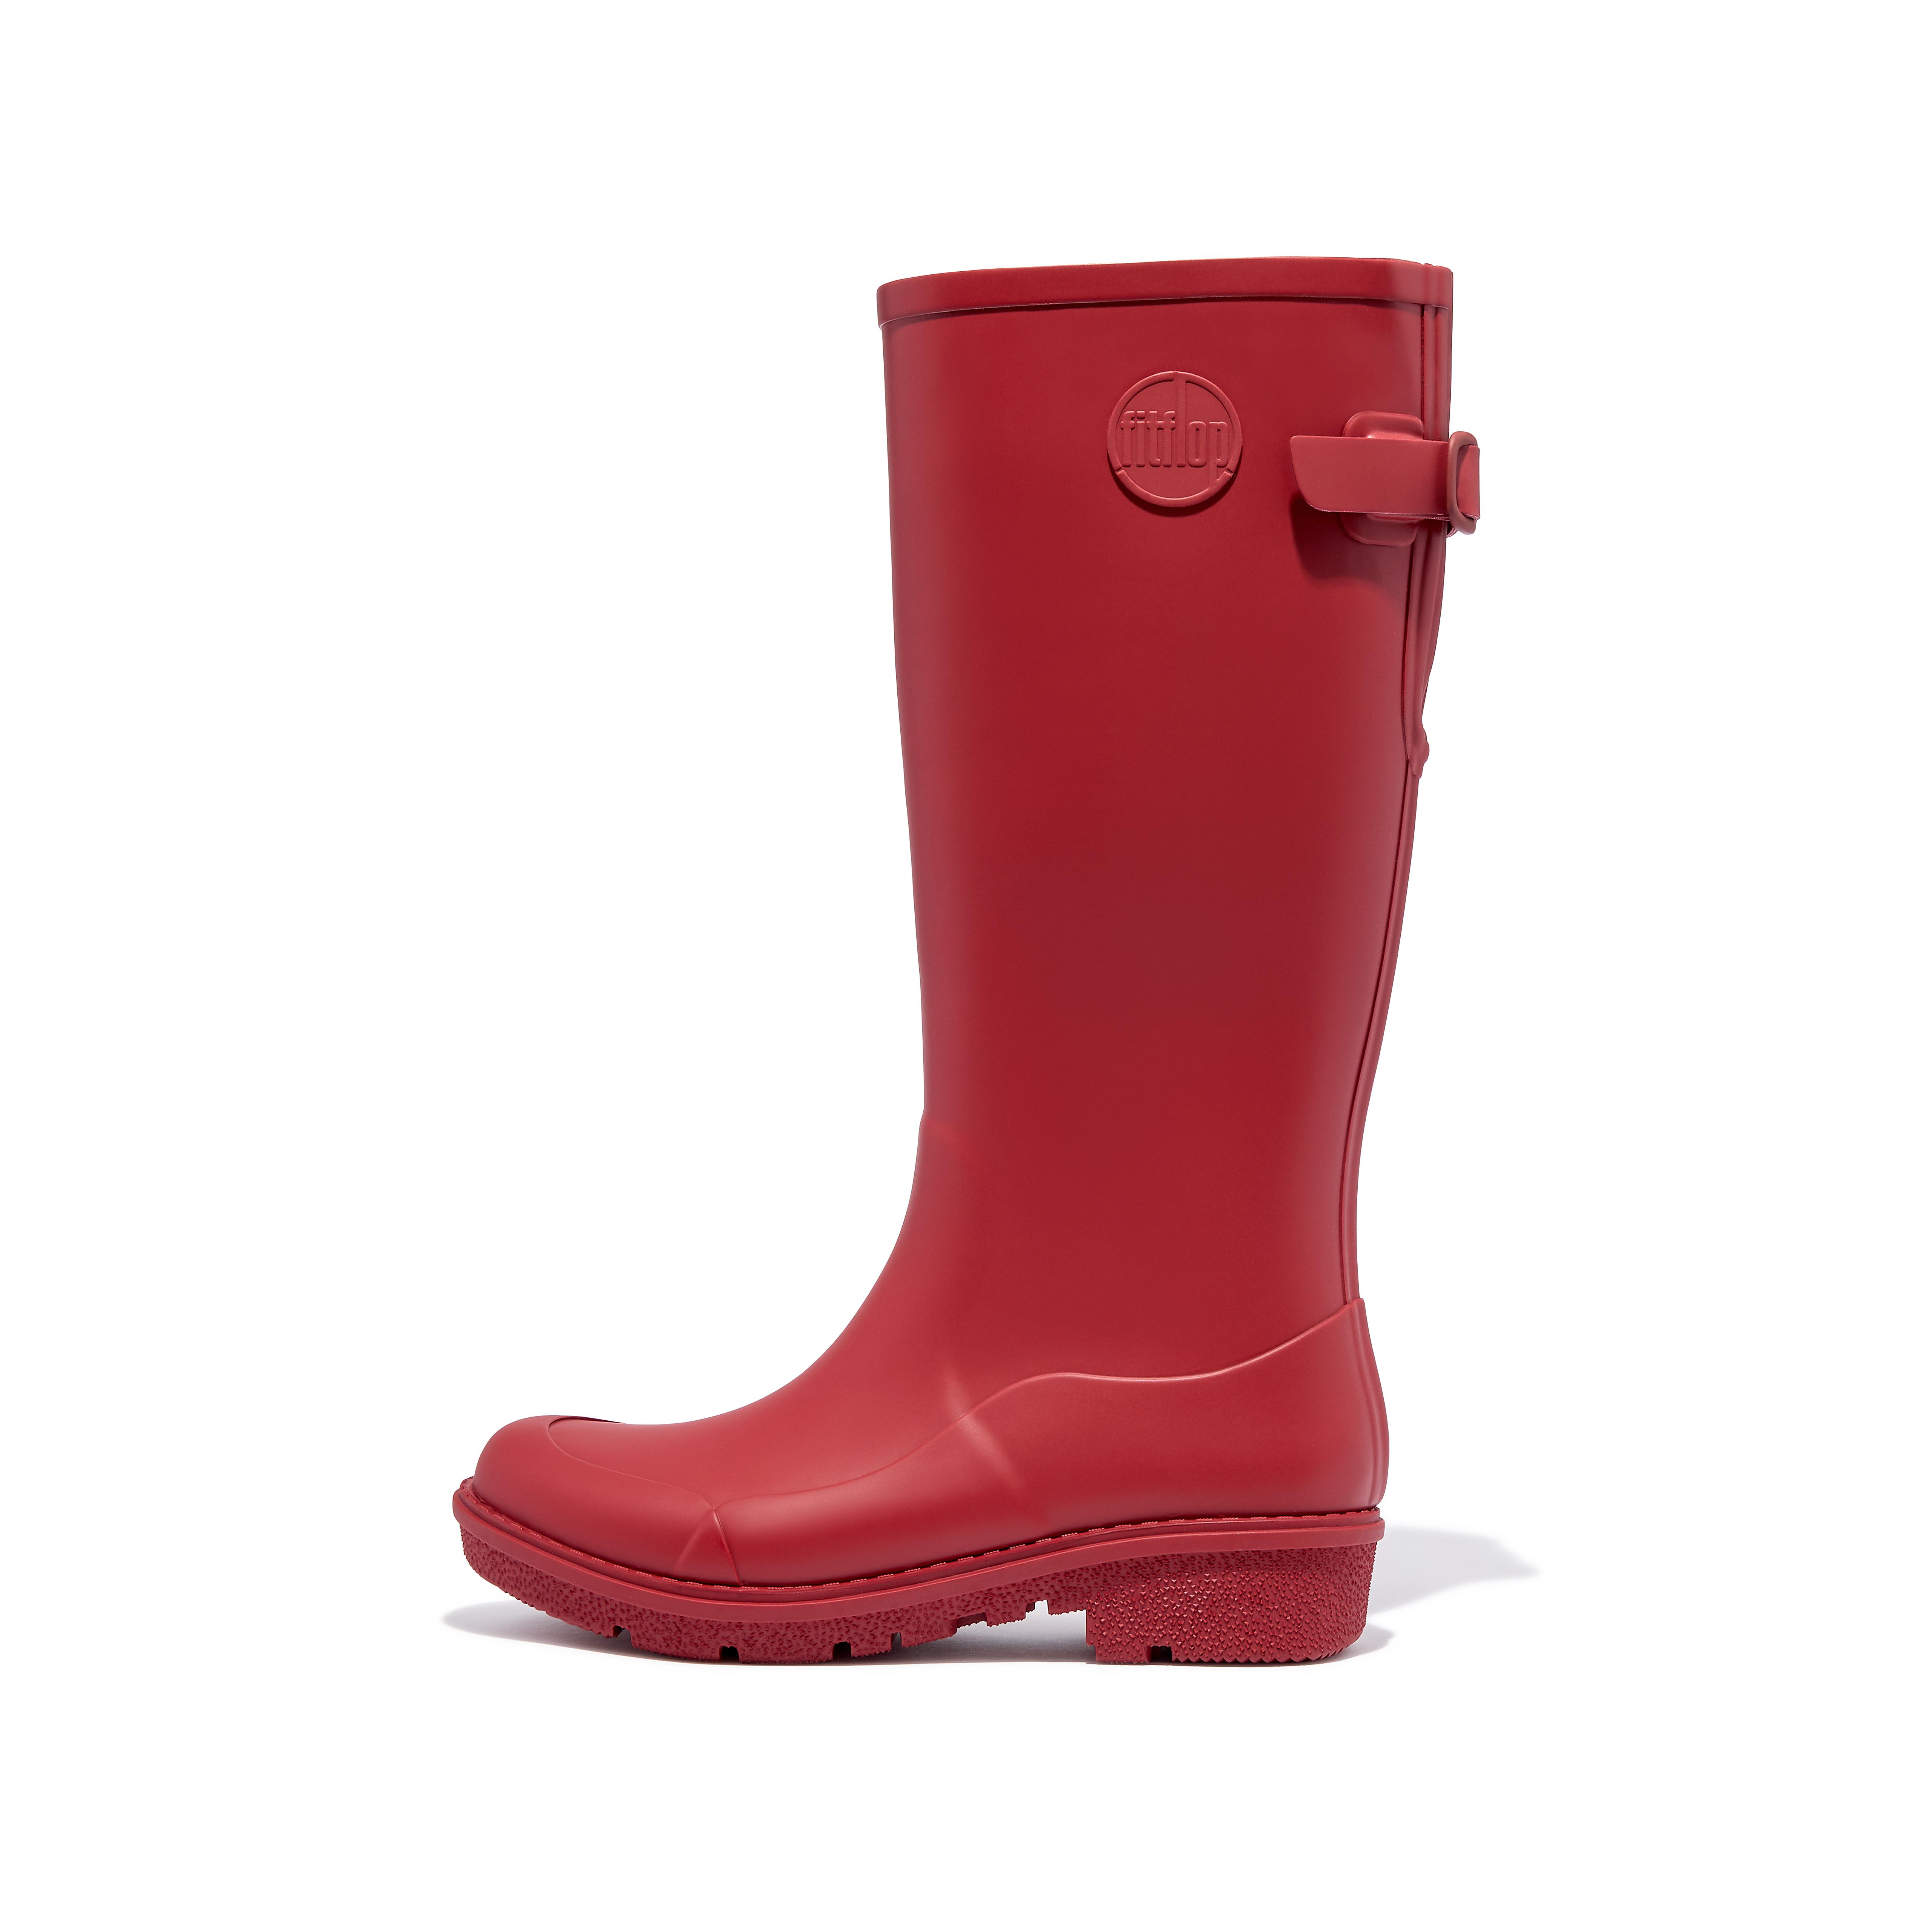 핏플랍 장화 (레인부츠) Fitflop Tall Rain Boots,Rich Red